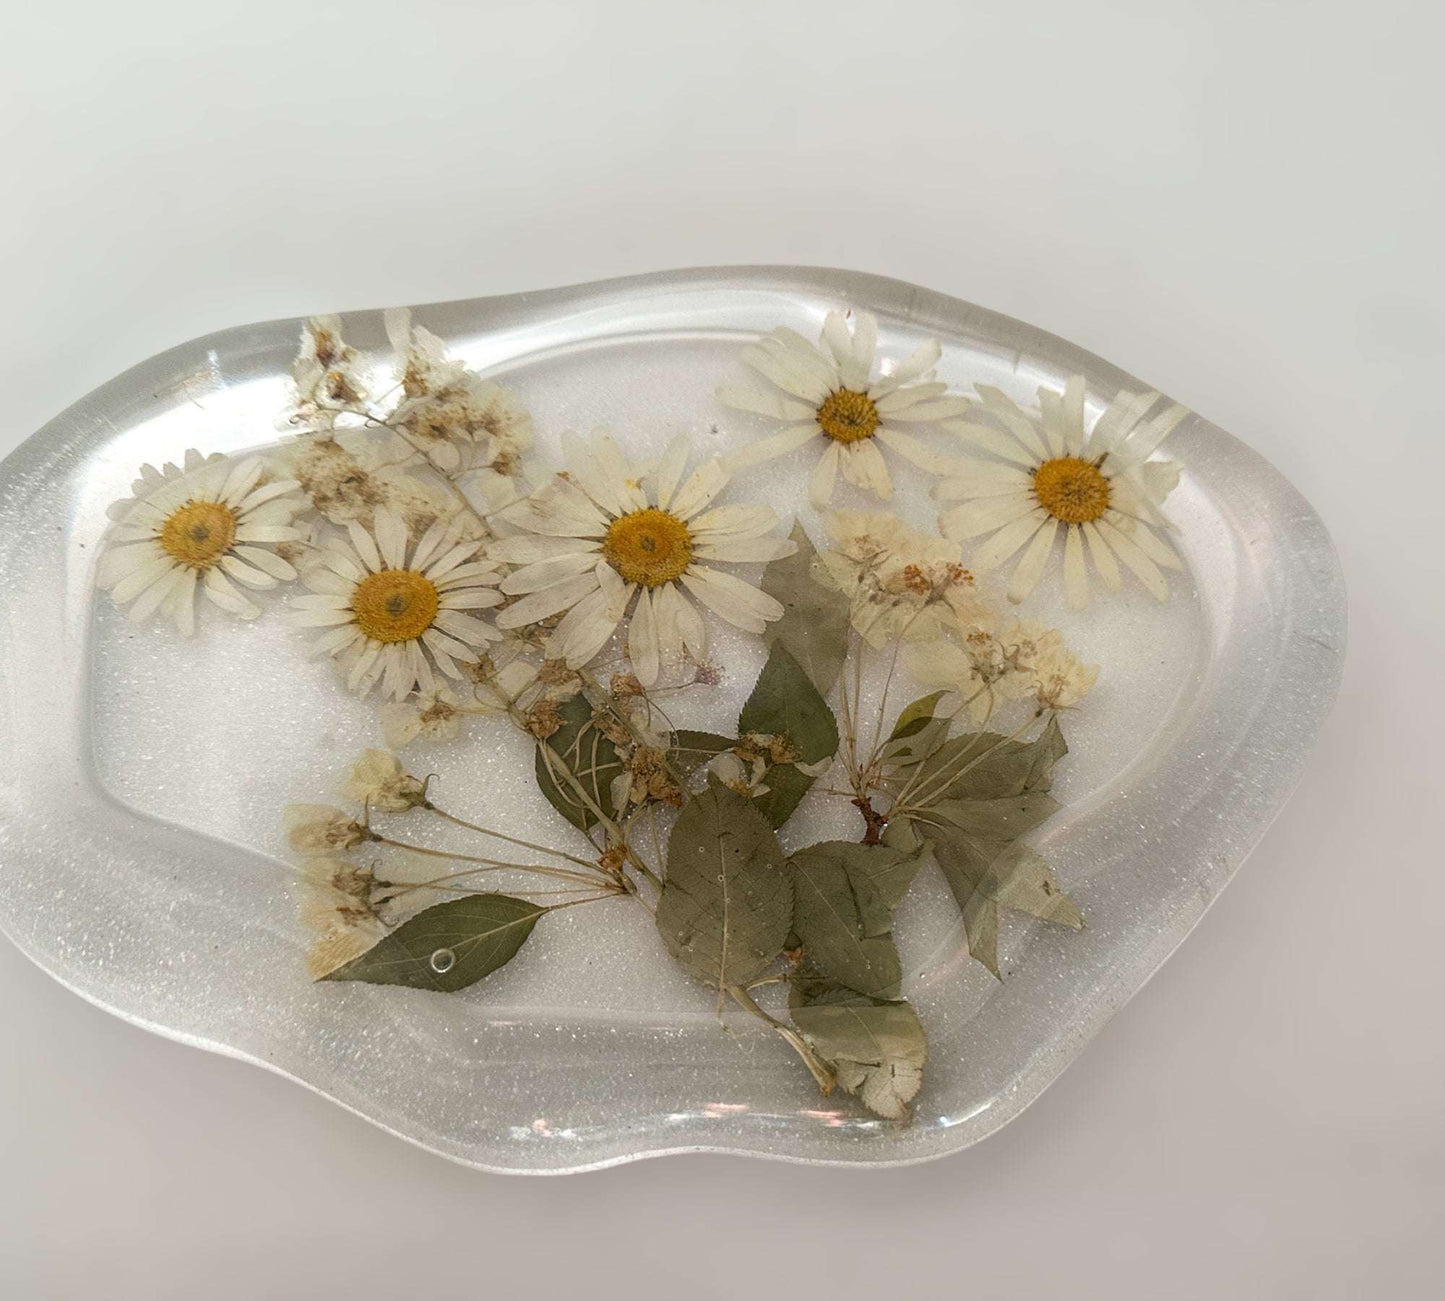 Daisy Dreams Epoxy Resin Tray: Handmade Nature-Inspired Elegance 